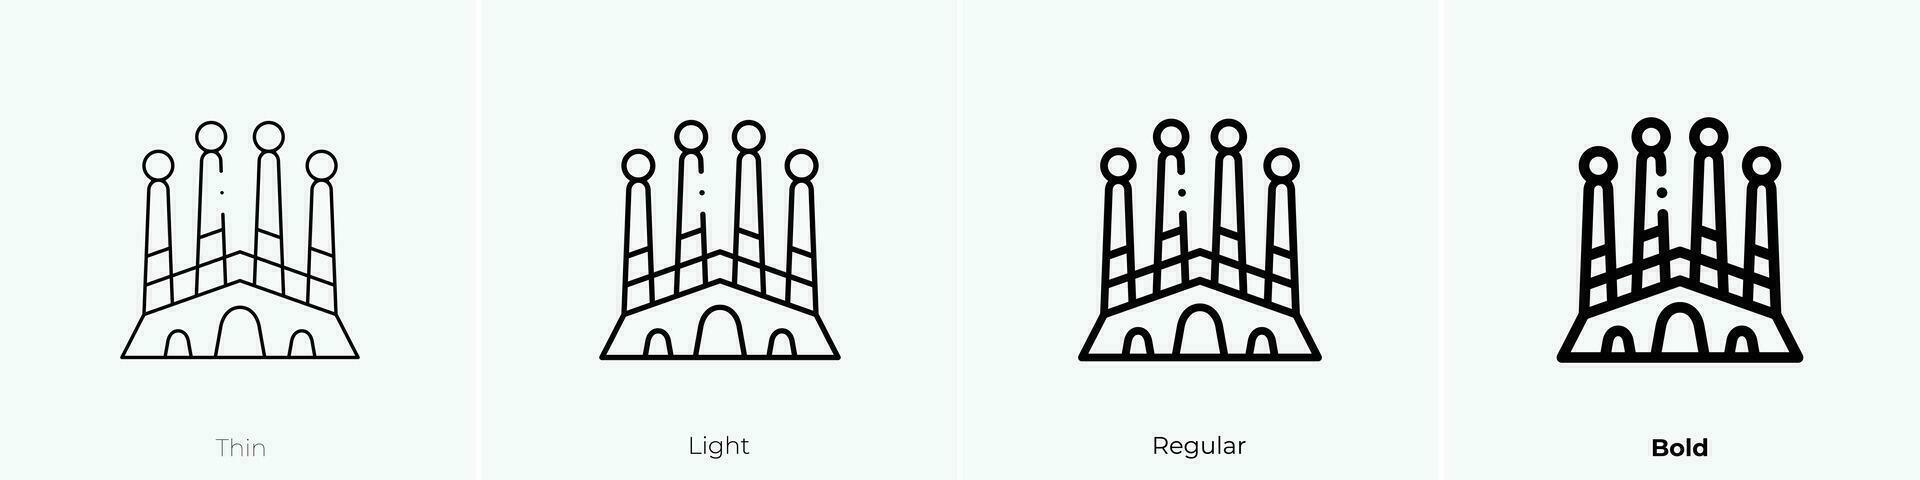 Sagrada familia Symbol. dünn, Licht, regulär und Fett gedruckt Stil Design isoliert auf Weiß Hintergrund vektor